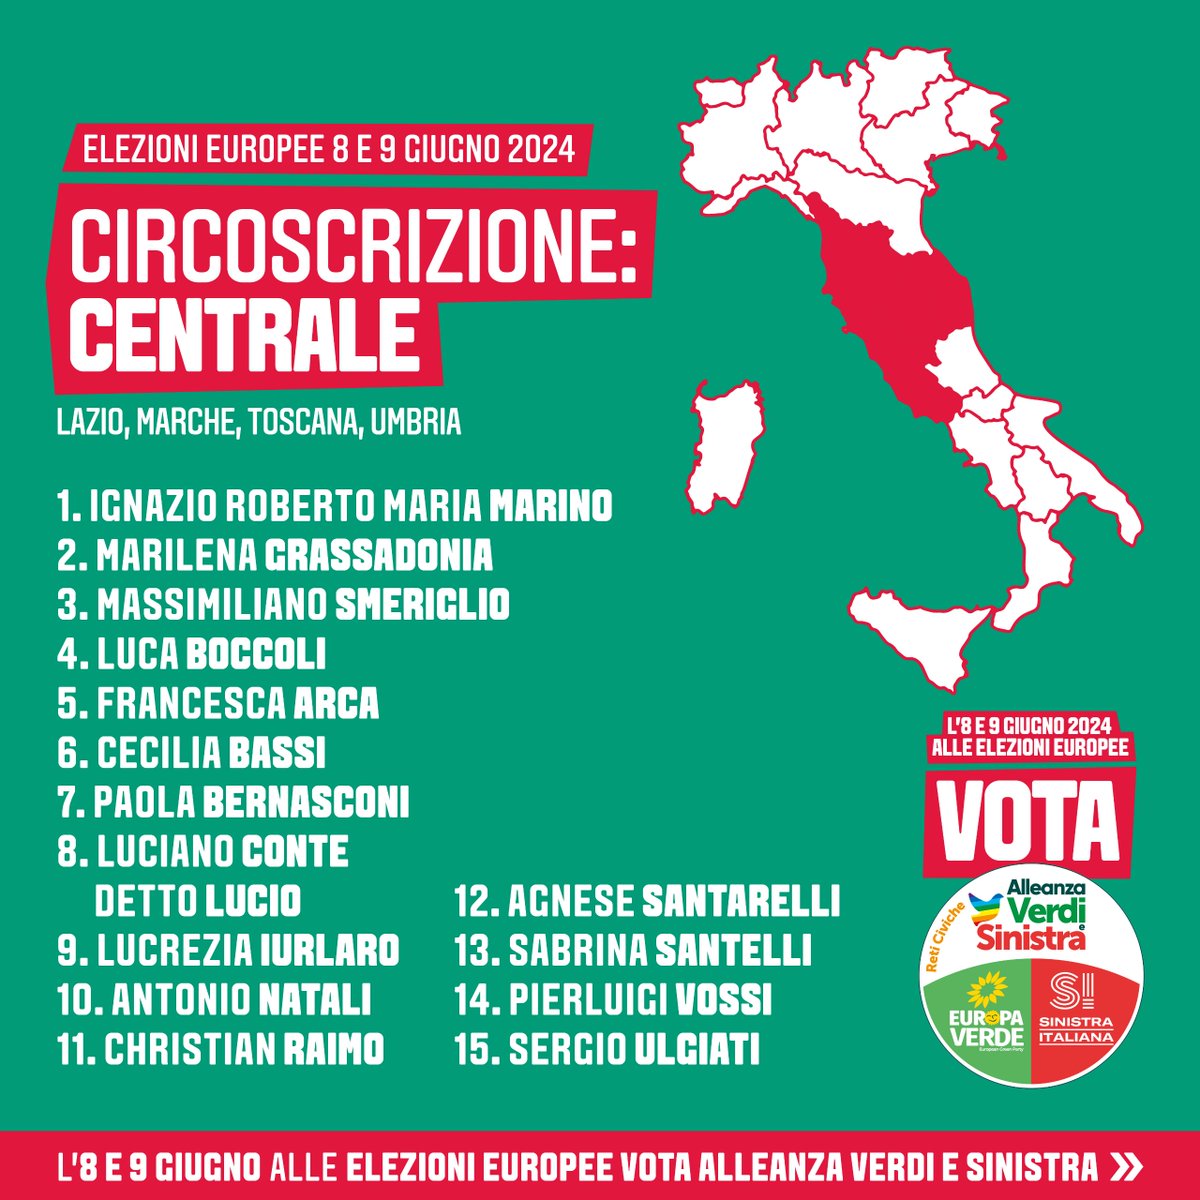 Appuntamento martedì 14 maggio alle 18 alla città dell’altra economia a Roma con #ignaziomarino #usailtuovoto #ElezioniEuropee2024 #tornaavotare